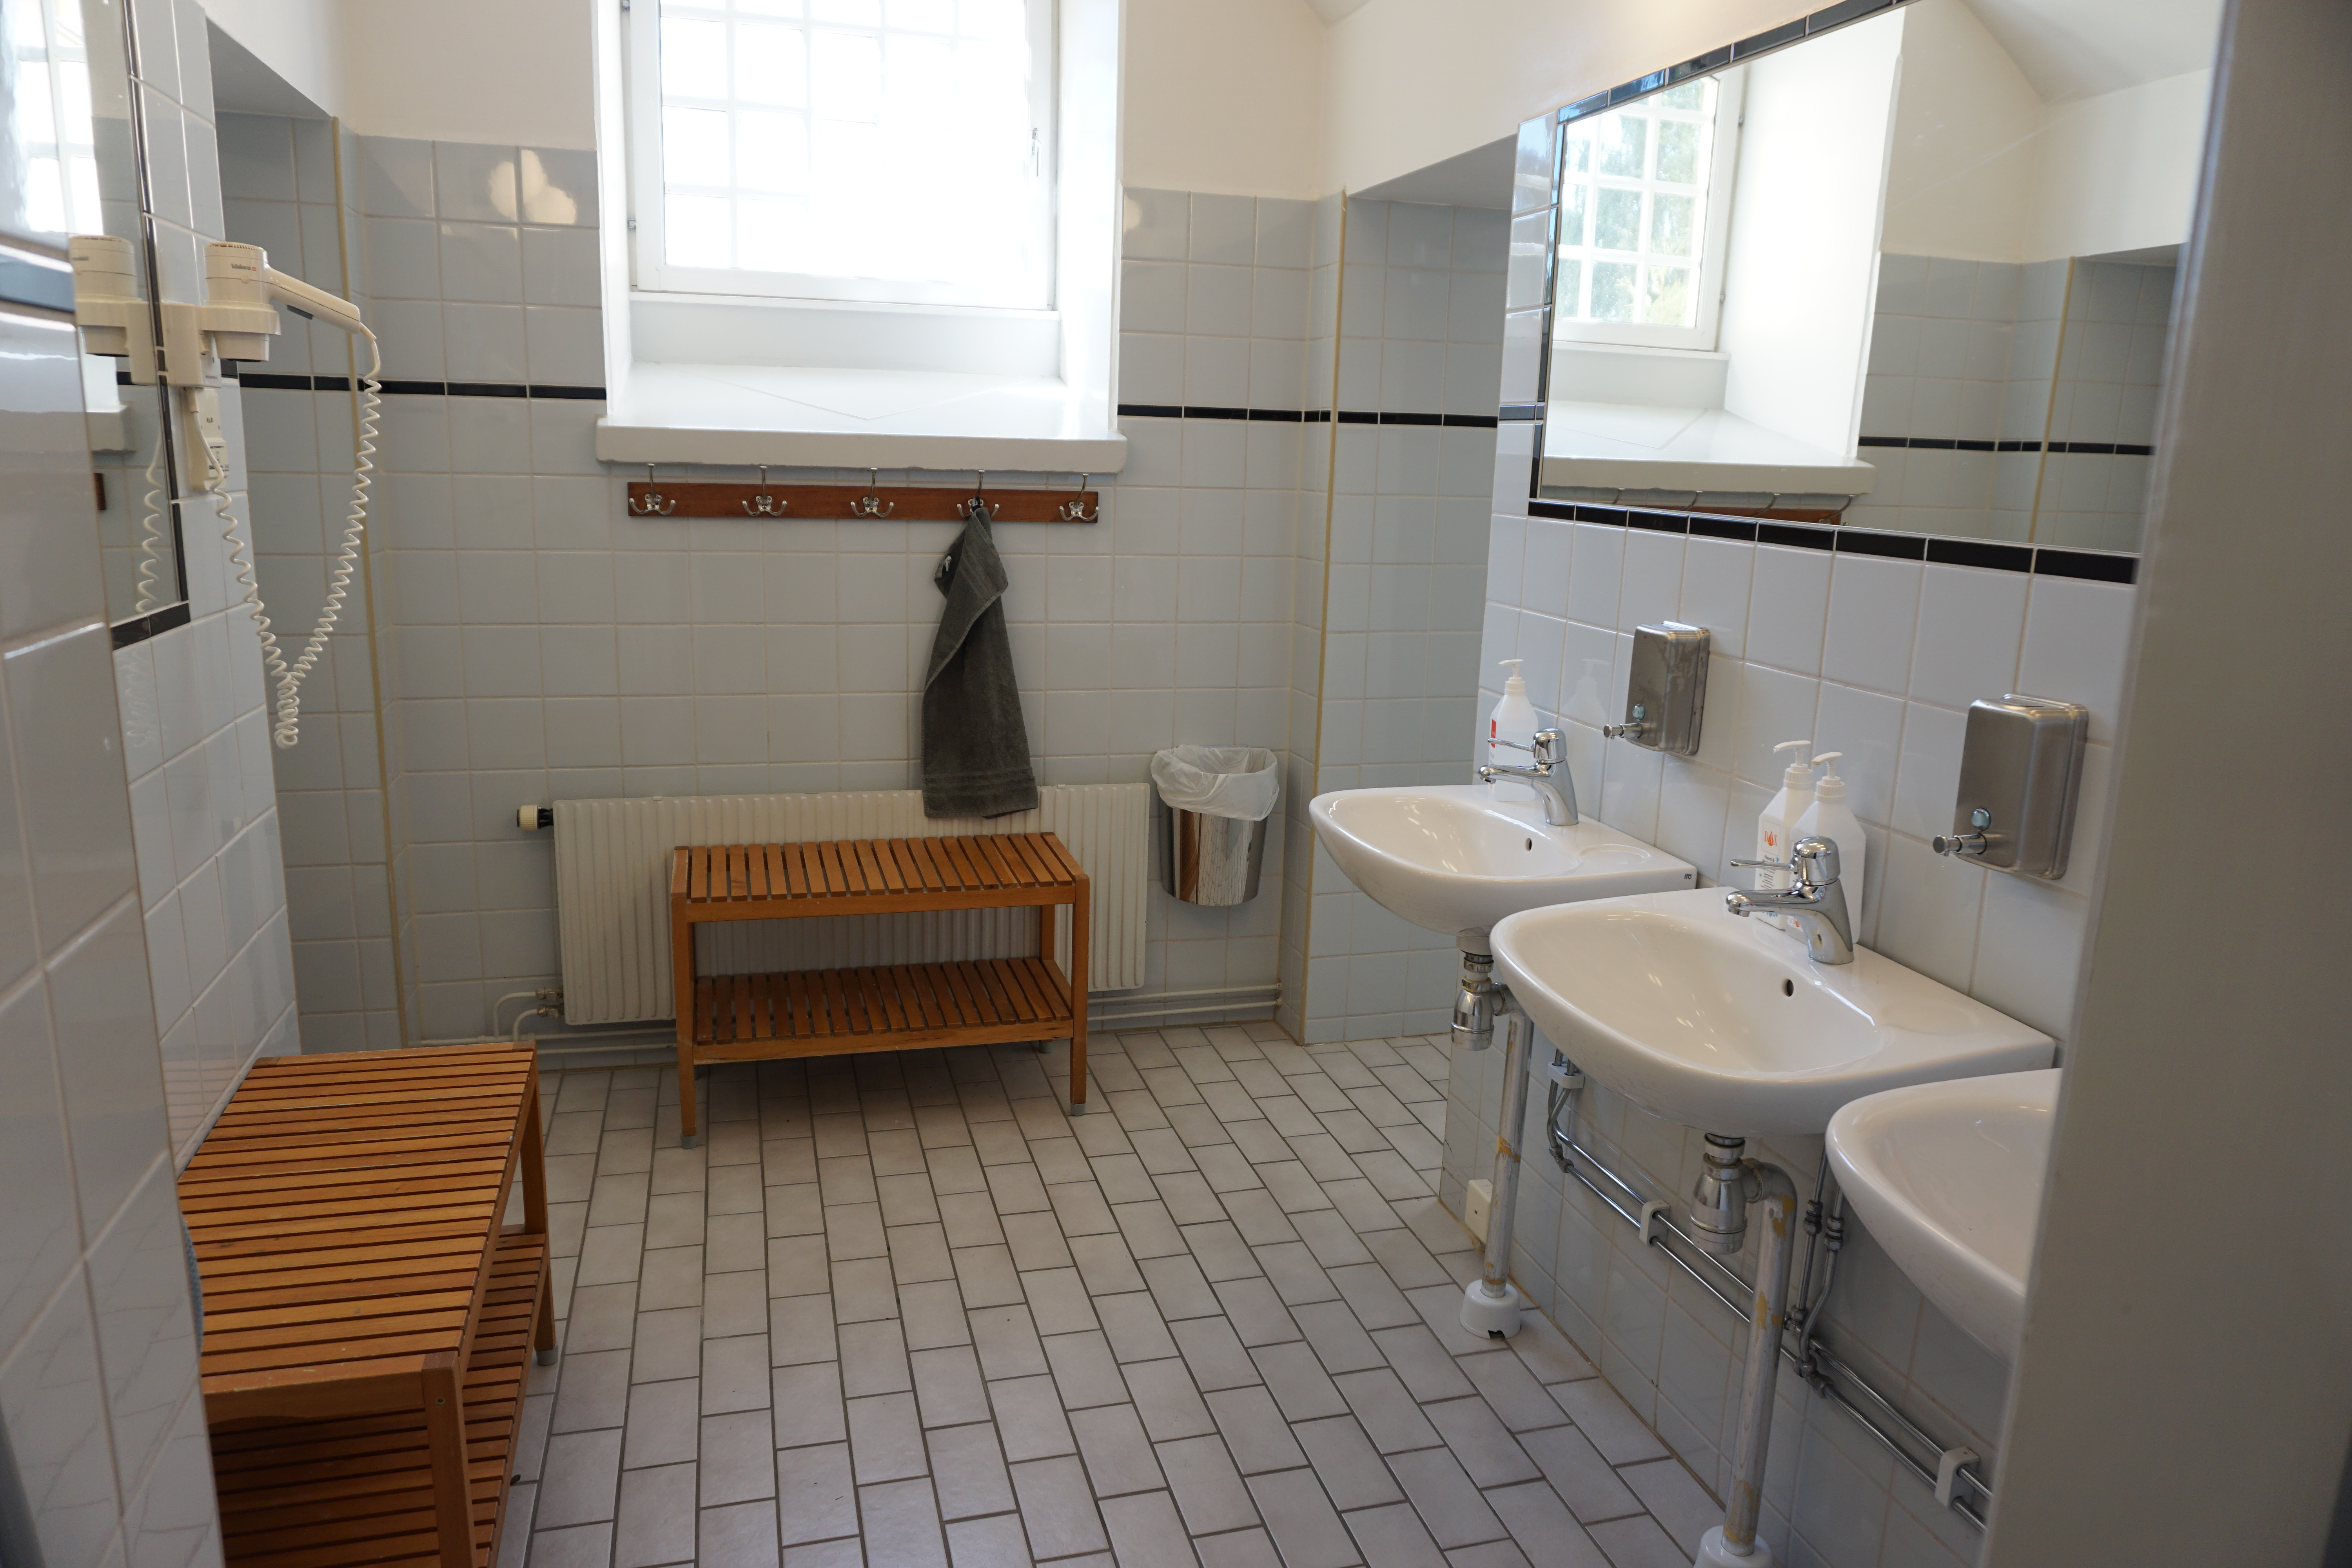 communal shower area at Långholmen hostel